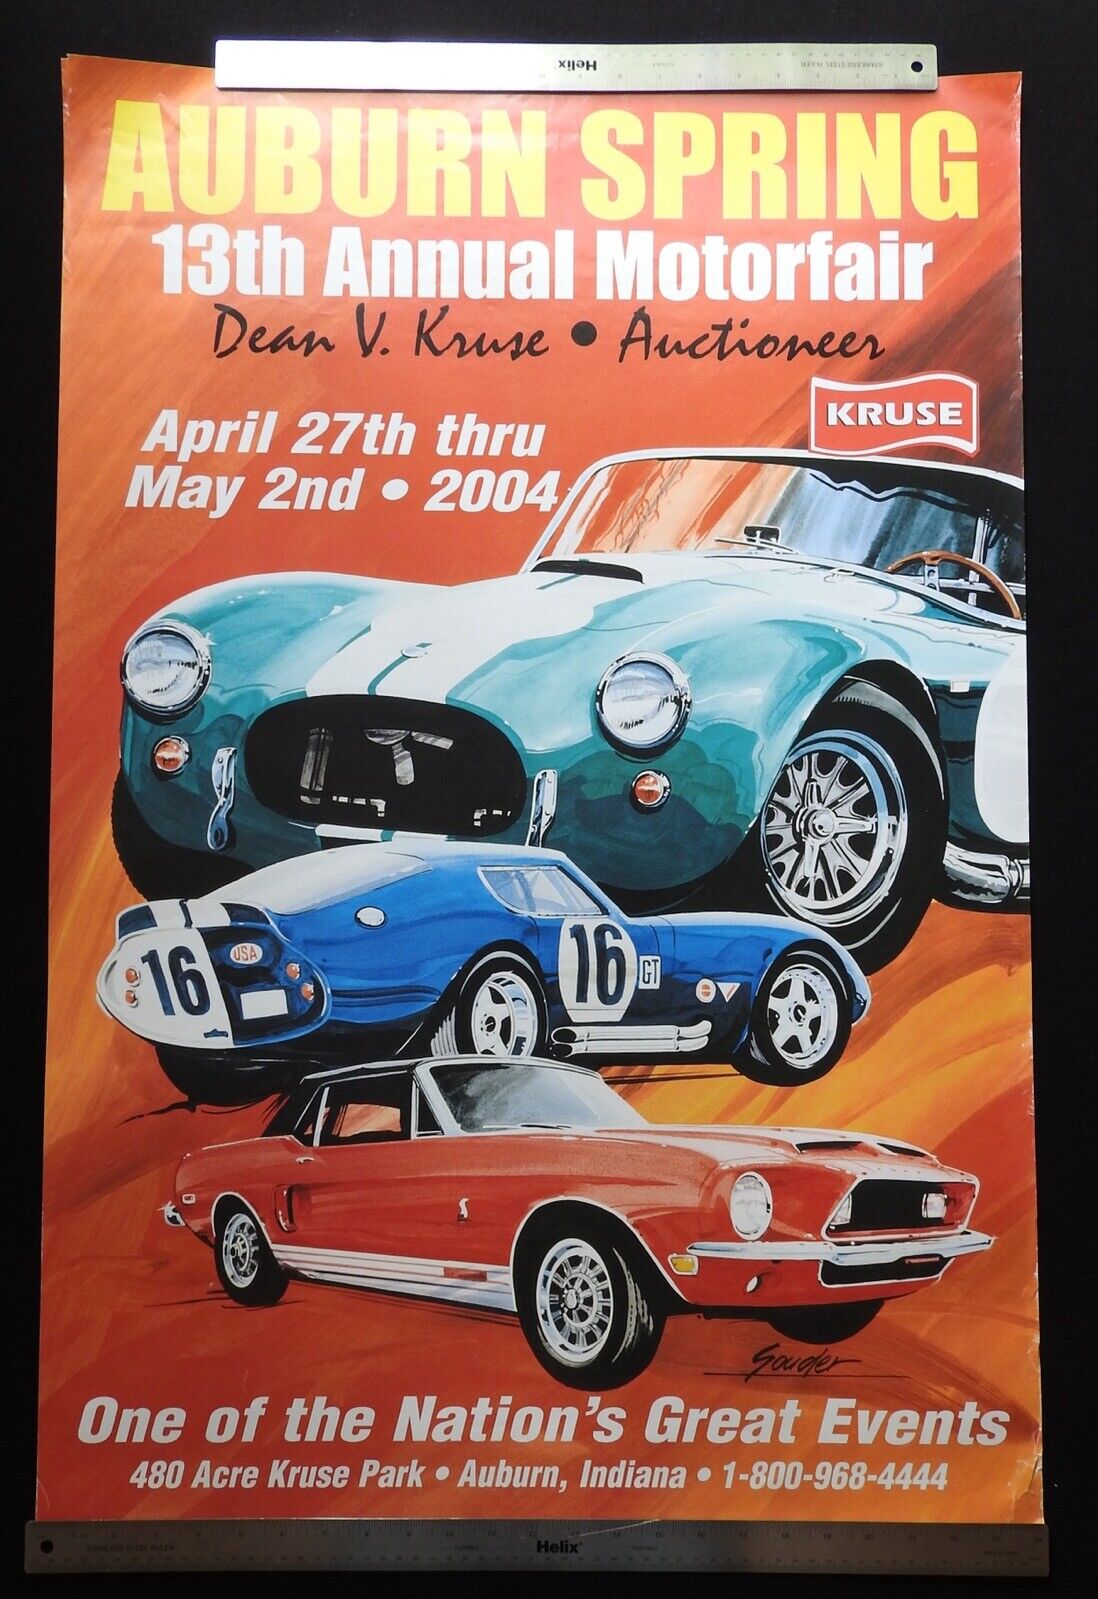 2004 Kruse Auburn Spring Auction Poster SHELBY COBRA DAYTONA GT Souder